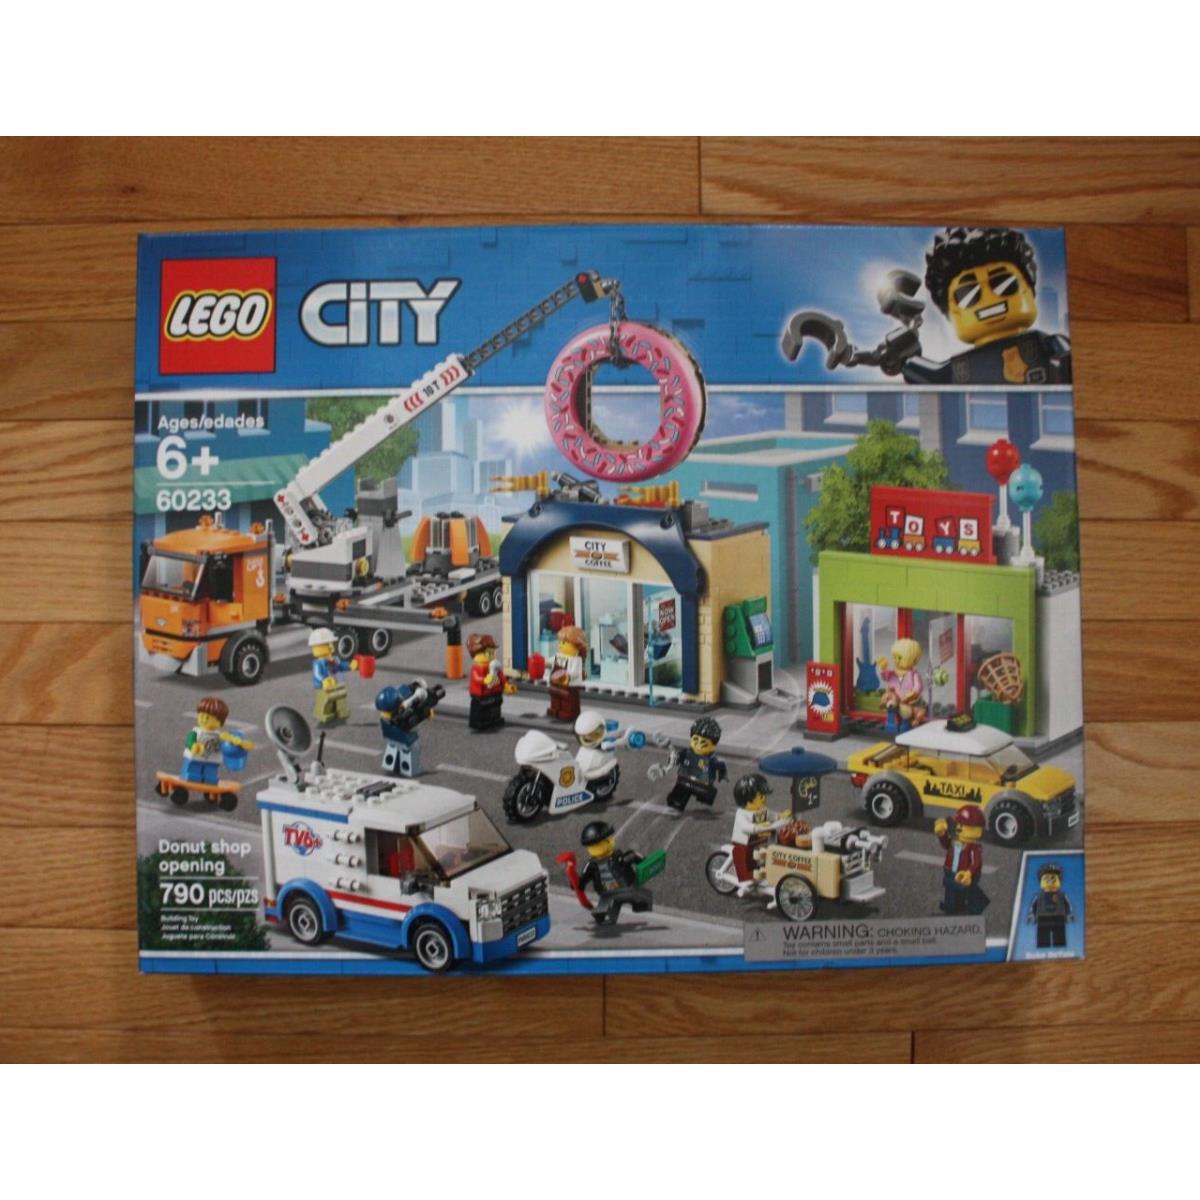 Lego City 60233 Donut Shop Opening